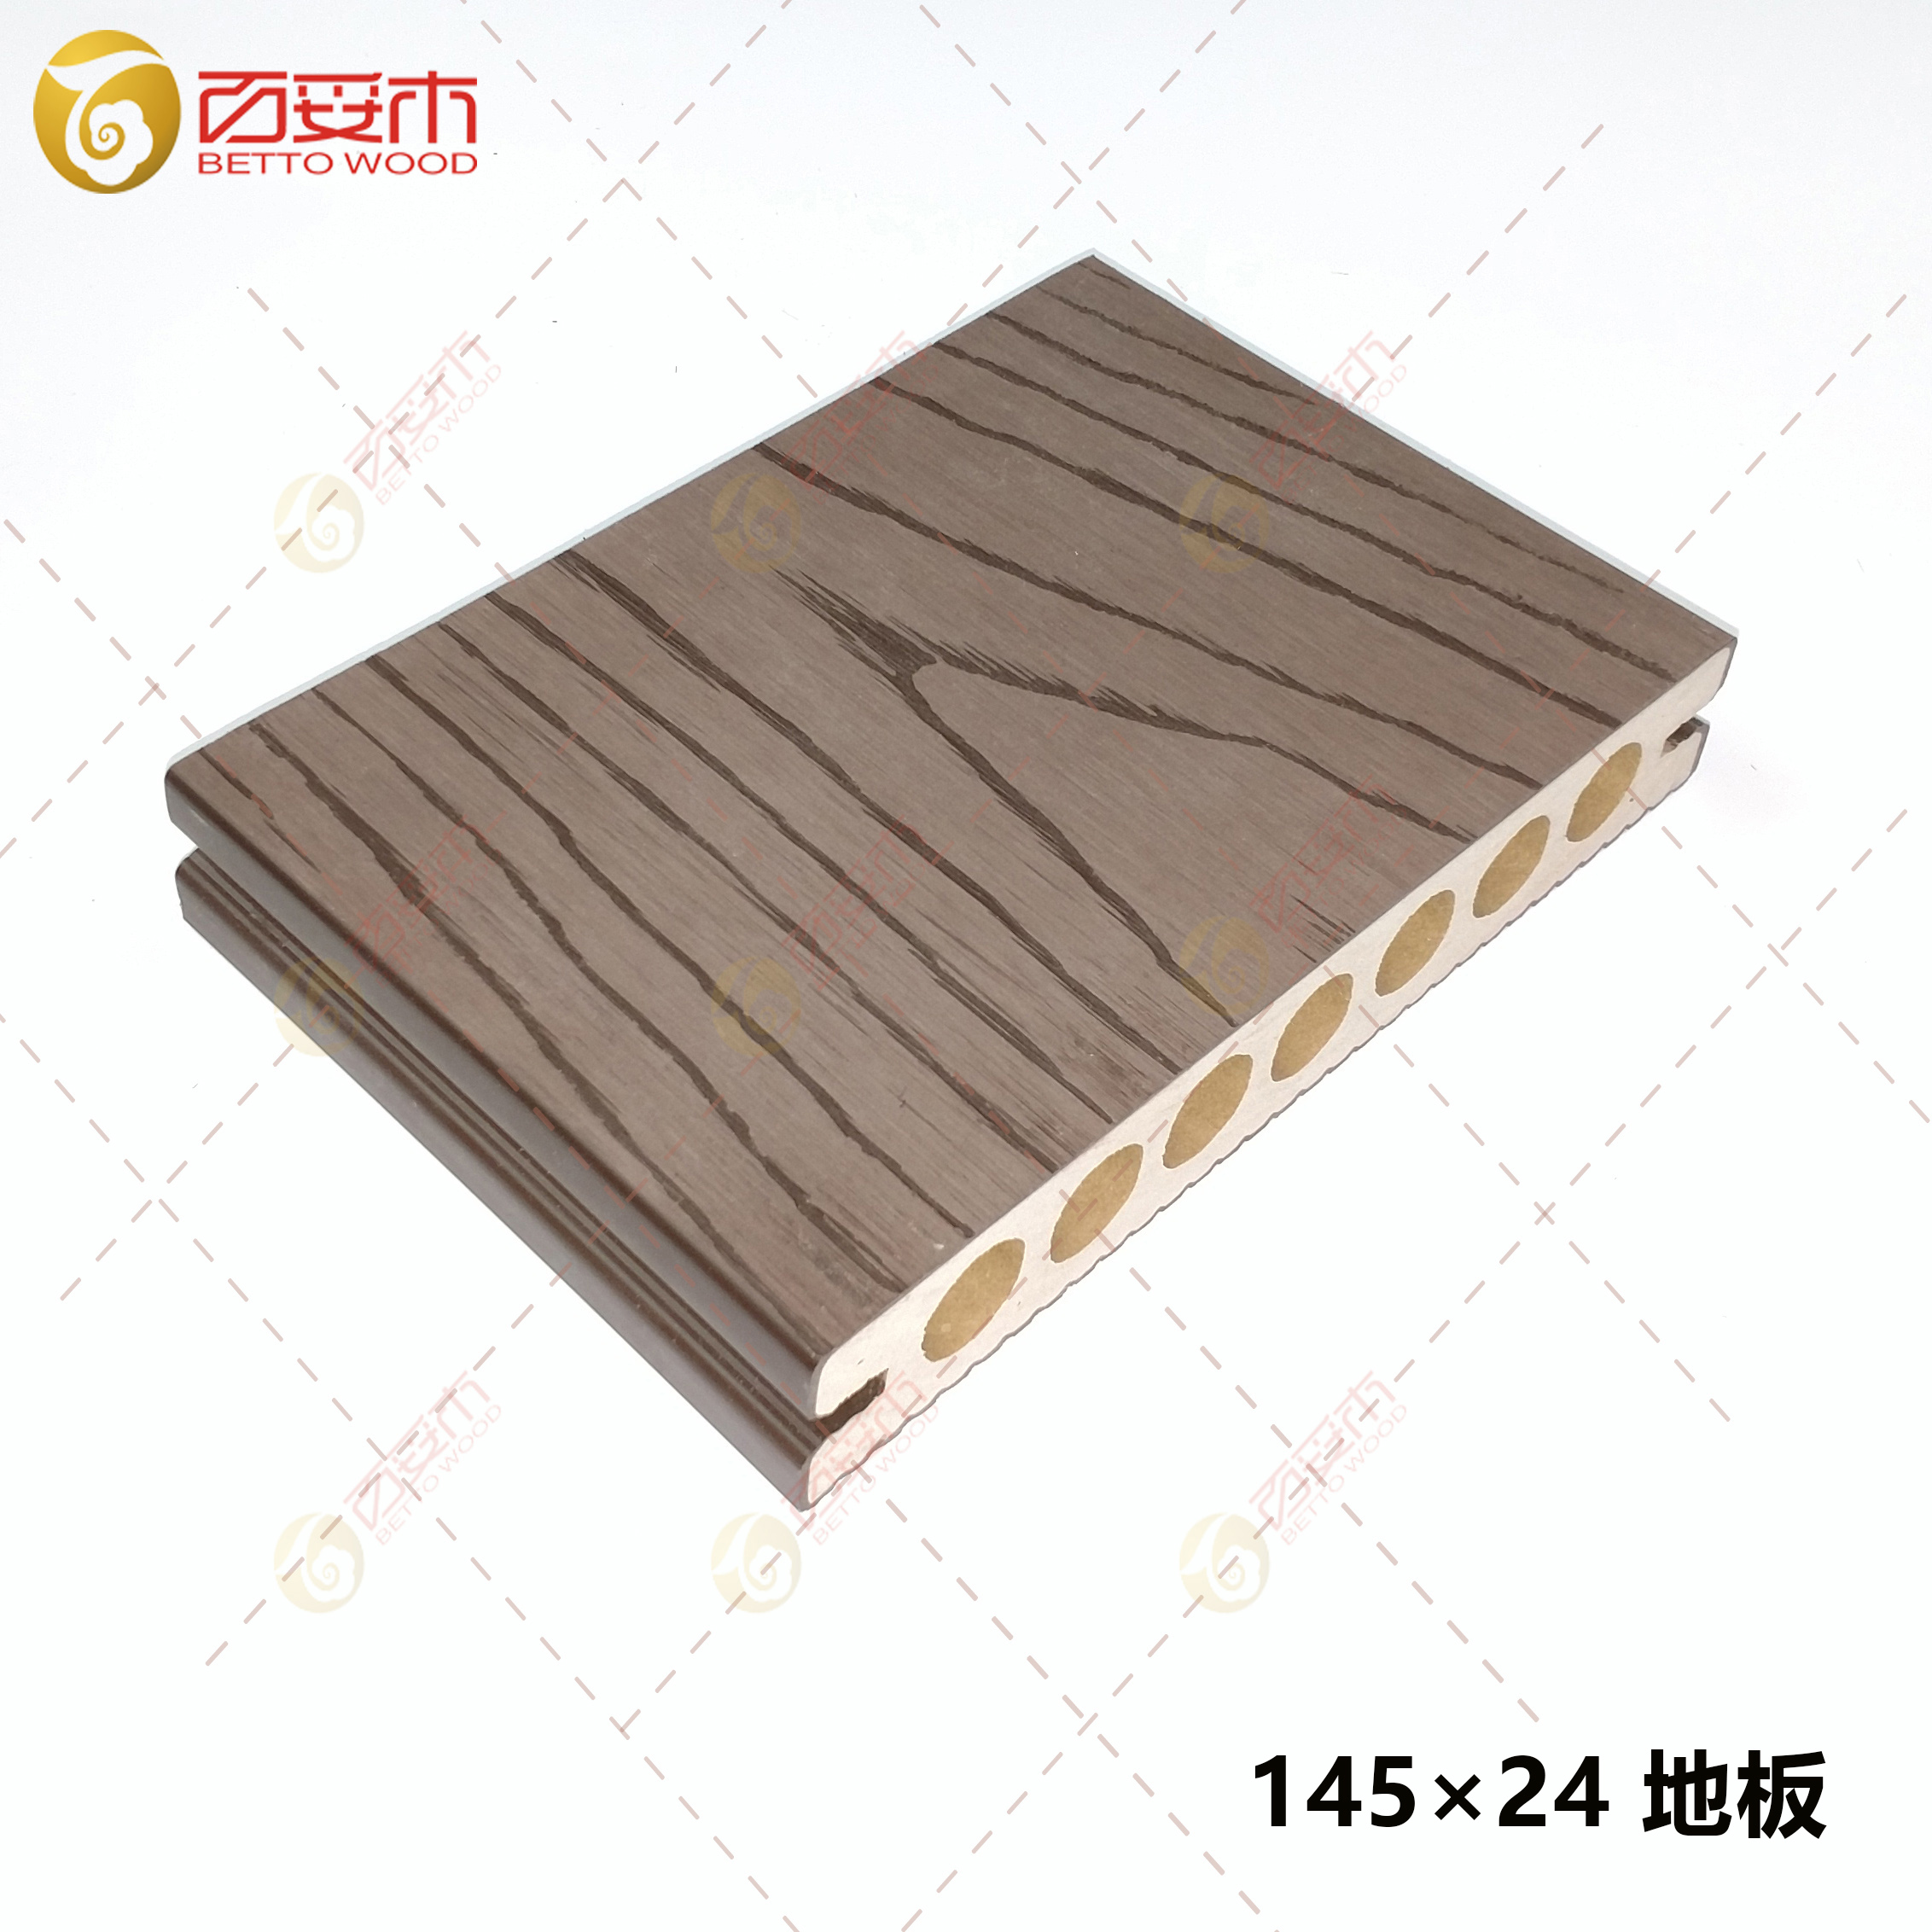 145×24塑木圆孔地板2